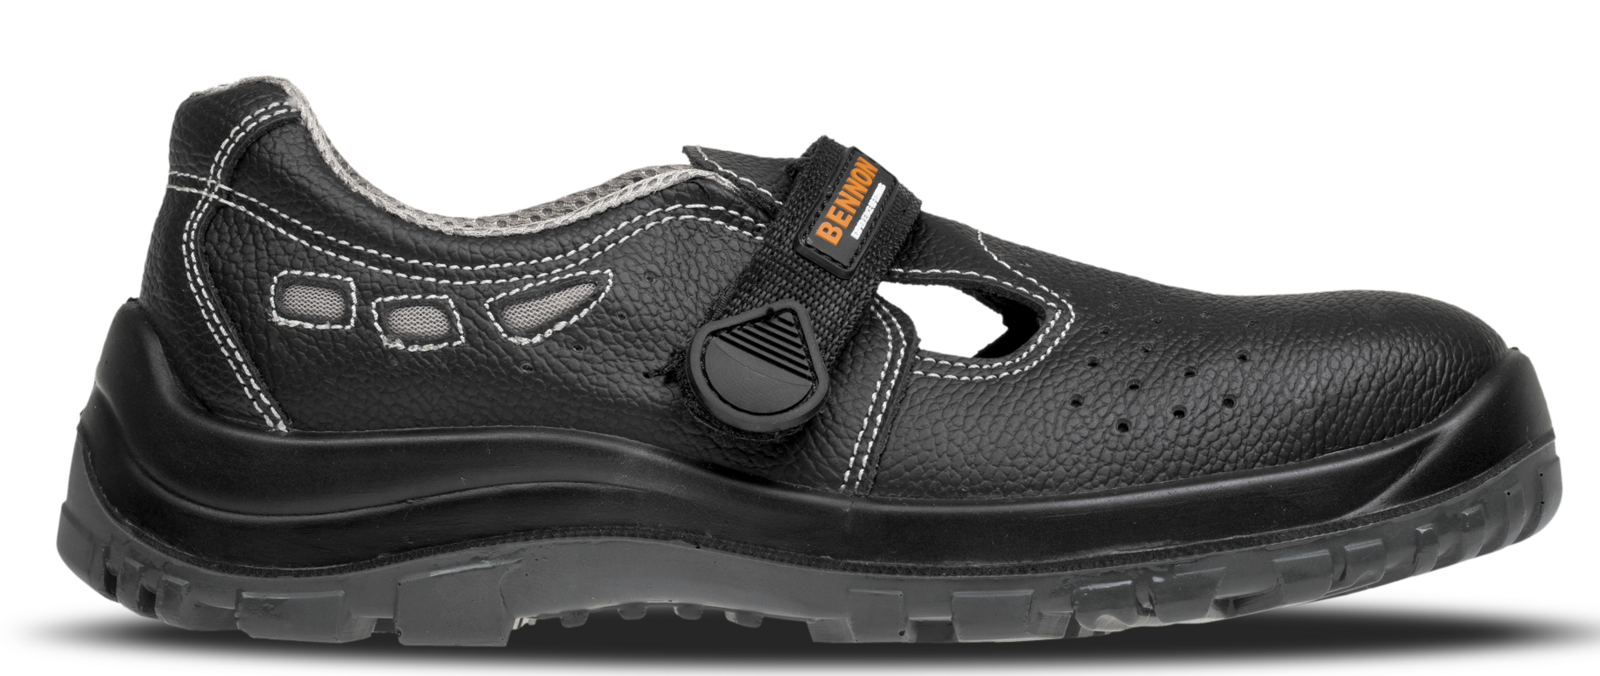 Bezpečnostné sandále Bennon Basic S1 - veľkosť: 47, farba: čierna